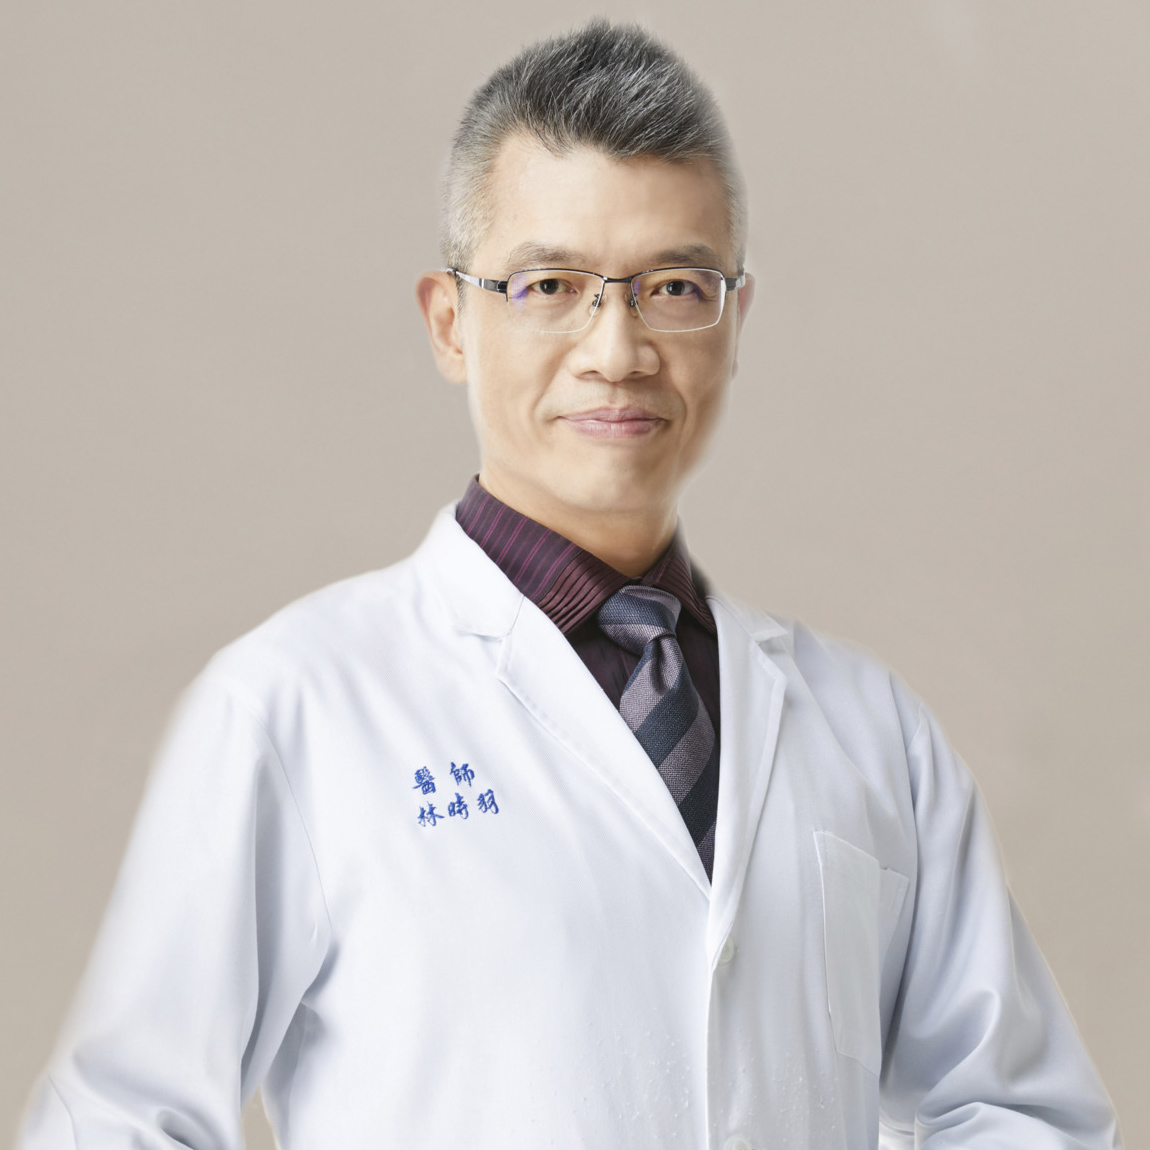 林时羽 Shyr-Yeu Lin, MD, PhD., 副院长.